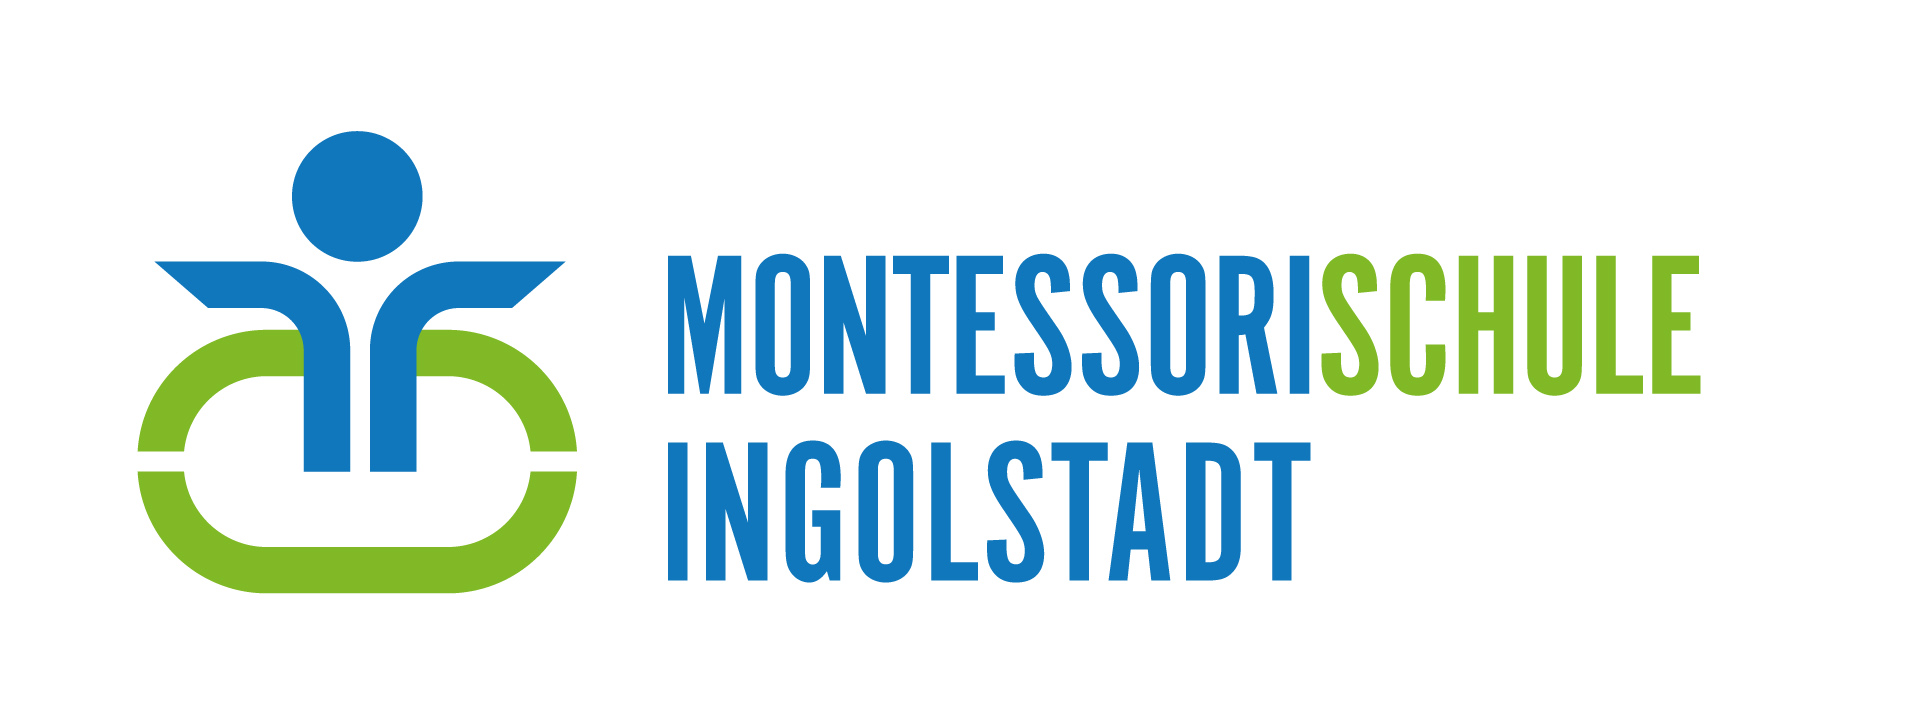 Montessorischule Ingolstadt